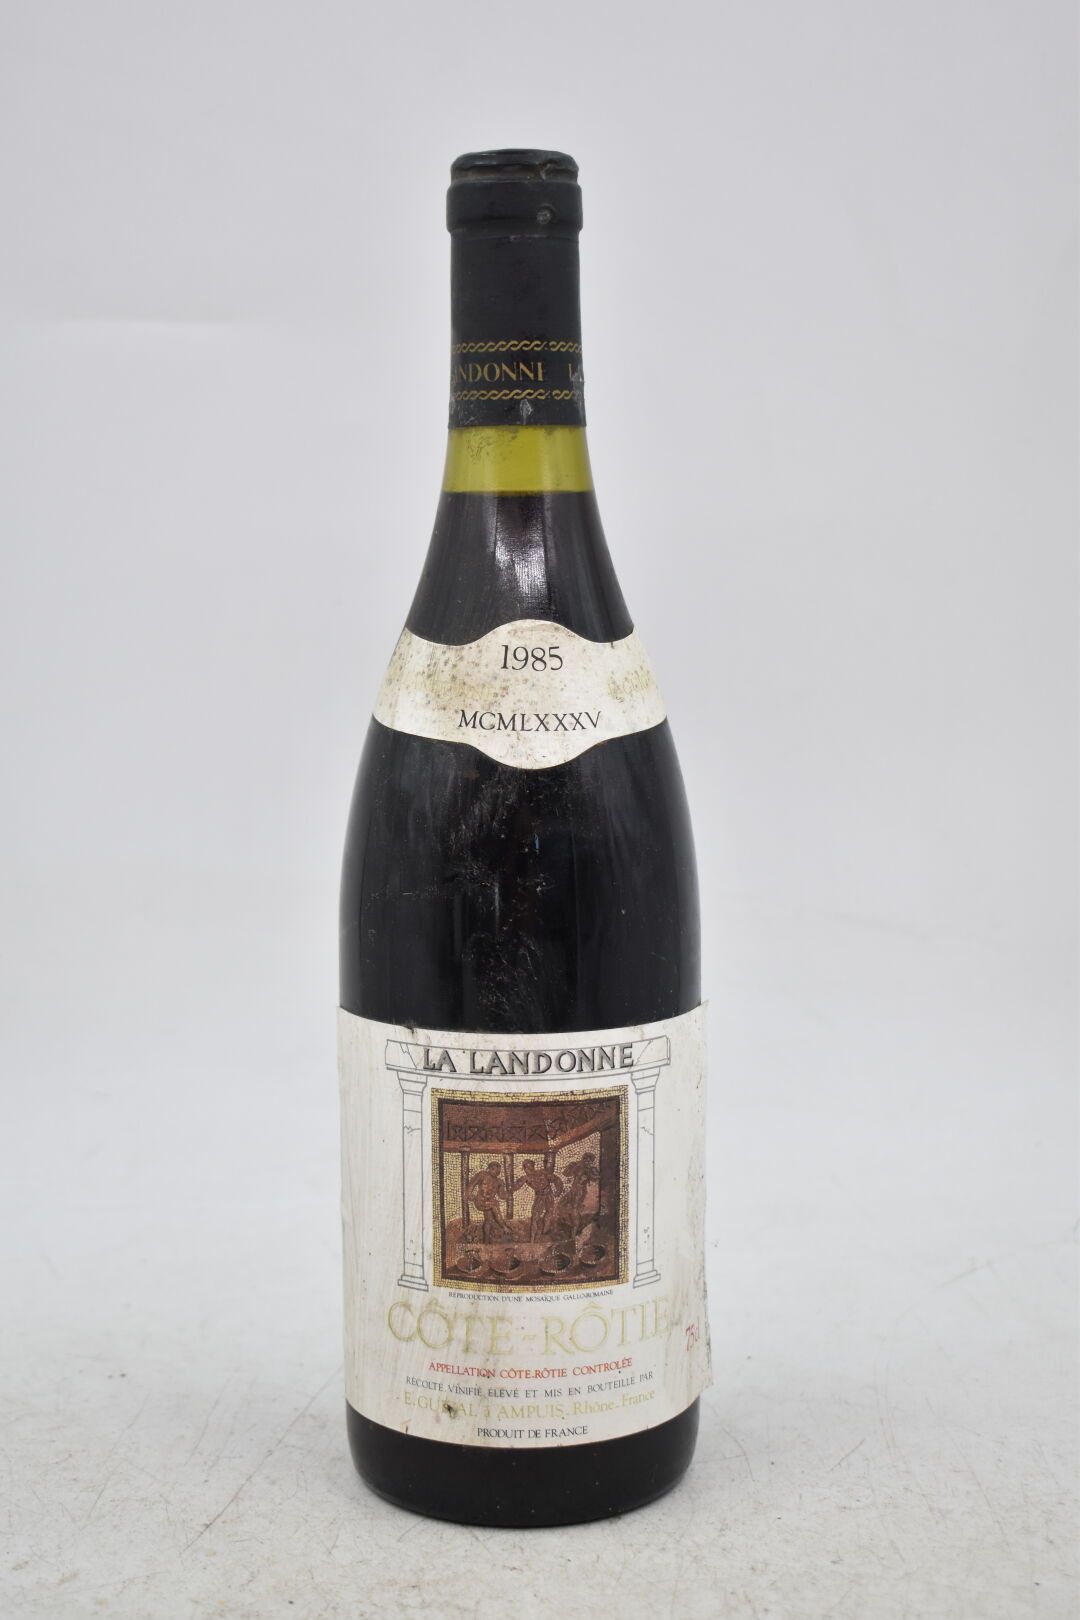 Null CÔTE-RÔTIE
La Landonne
1985
E. Guigal (Ampuis)
1 Flasche

Füllstand: 1,3 cm&hellip;